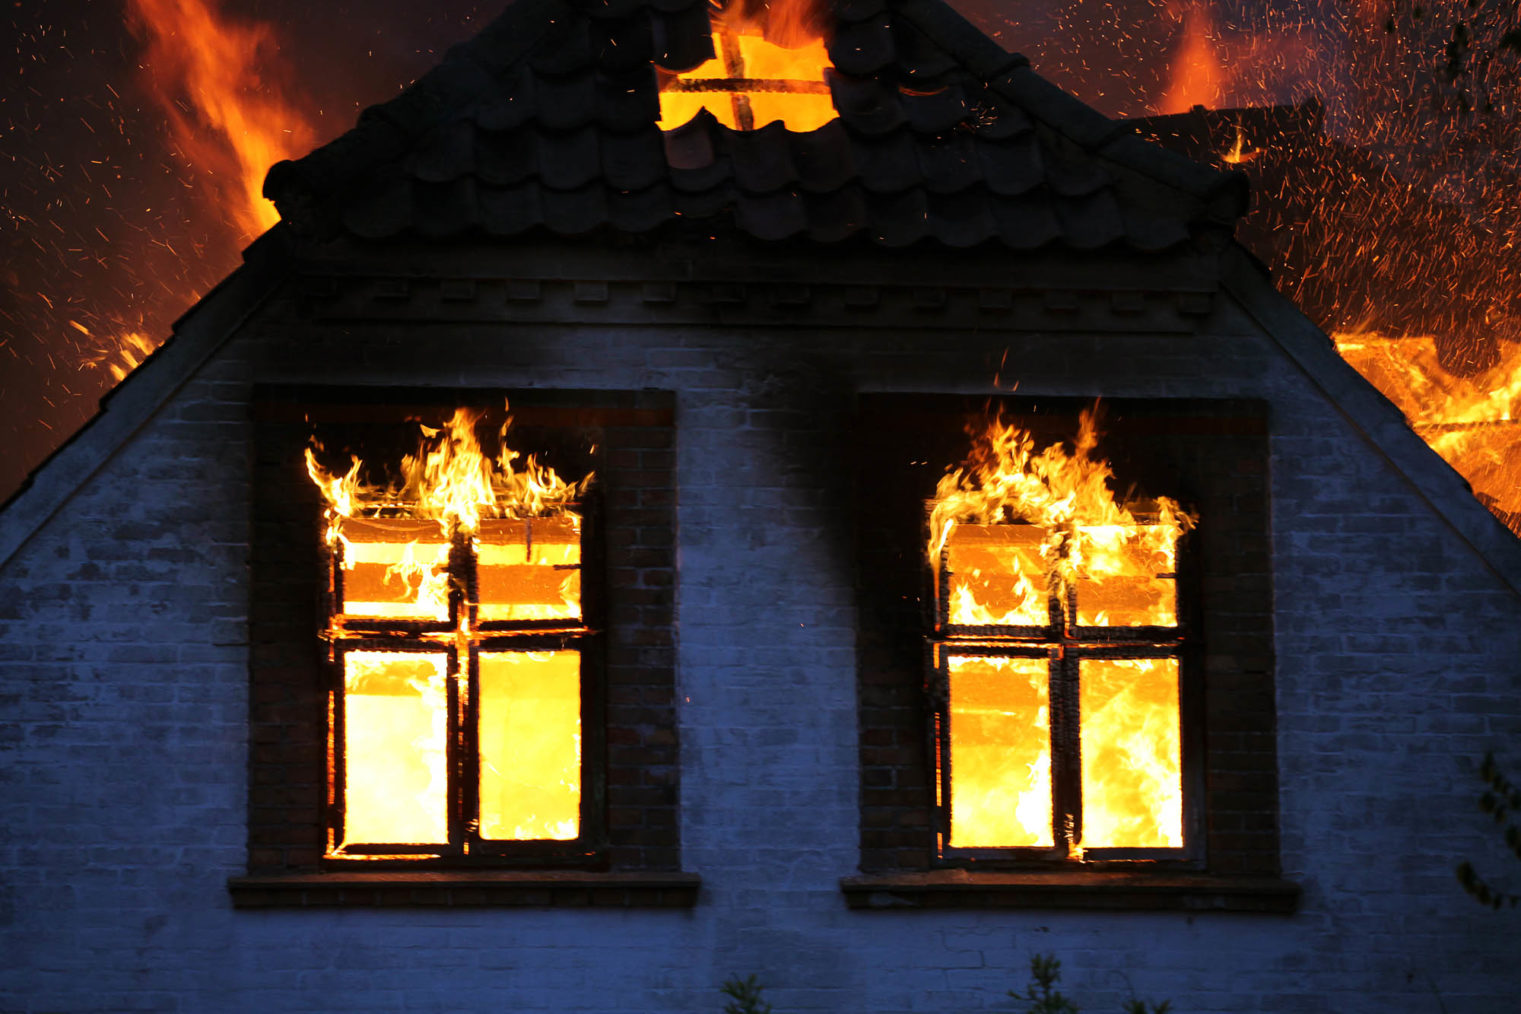 Bilde av brennende bolighus.